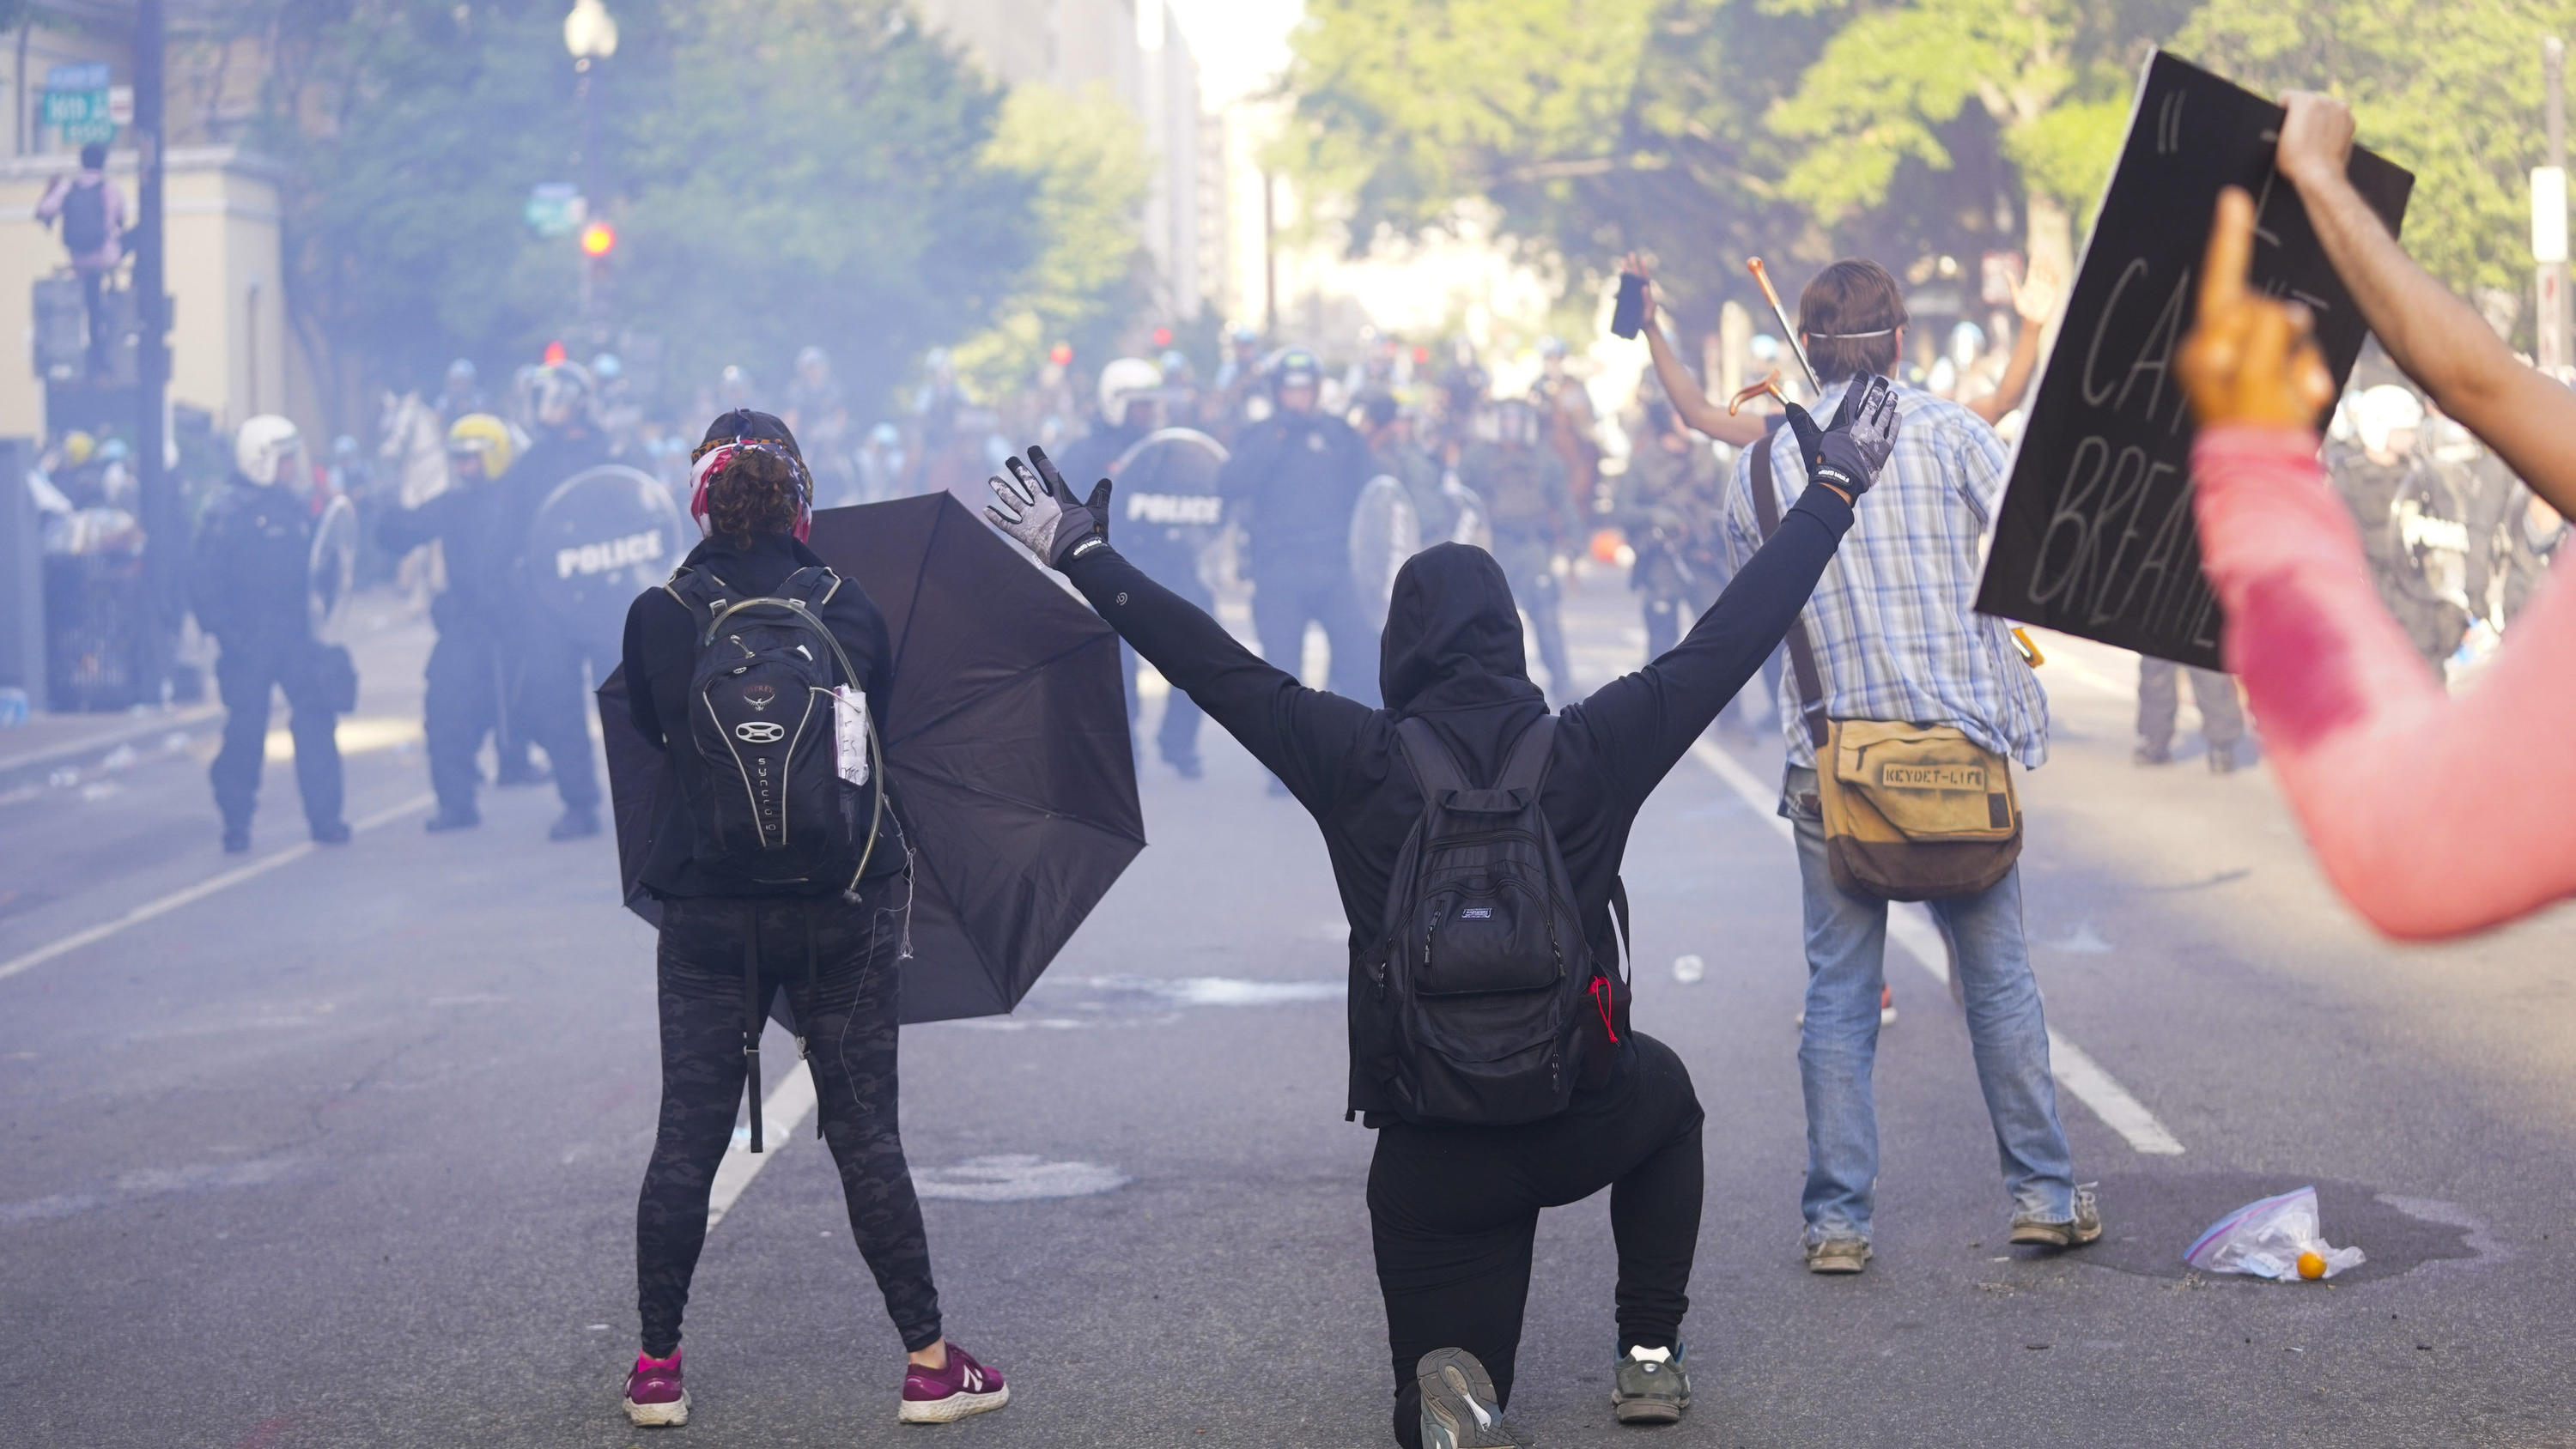 01.06.2020, USA, Washington: Demonstranten stehen während eines Protests vor Polizisten. Landesweite Proteste richten sich nach dem gewaltsamen Tod des Afroamerikaners Floyd durch einen weißen Polizisten gegen Rassismus und Polizeigewalt. Die teils s